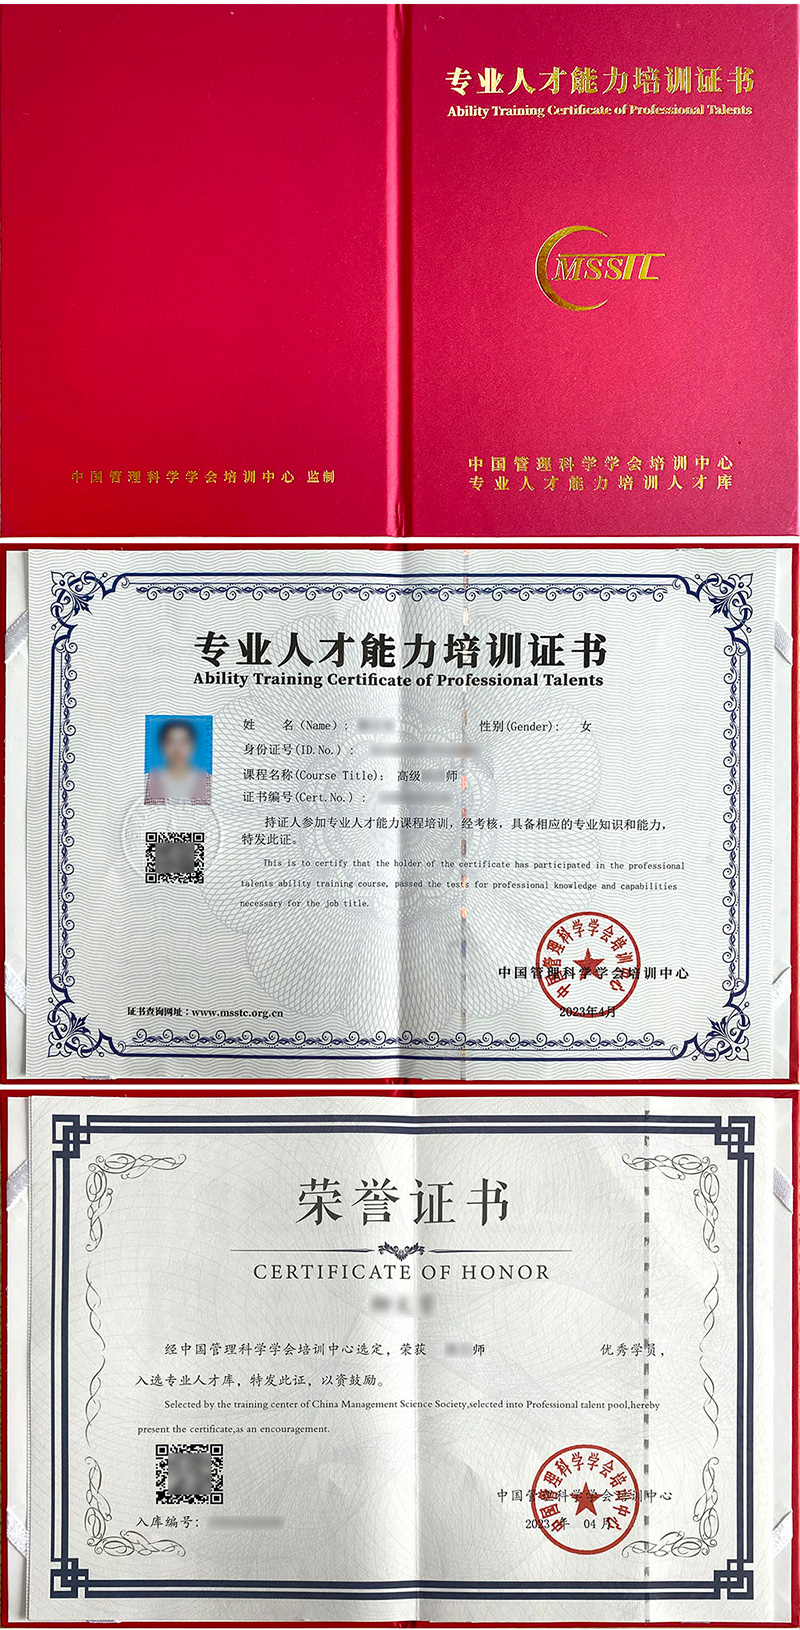 中国管理科学学会培训中心 专业人才能力培训证书 健身教练（武术、搏击、柔道、空手道、拳击）证书样本